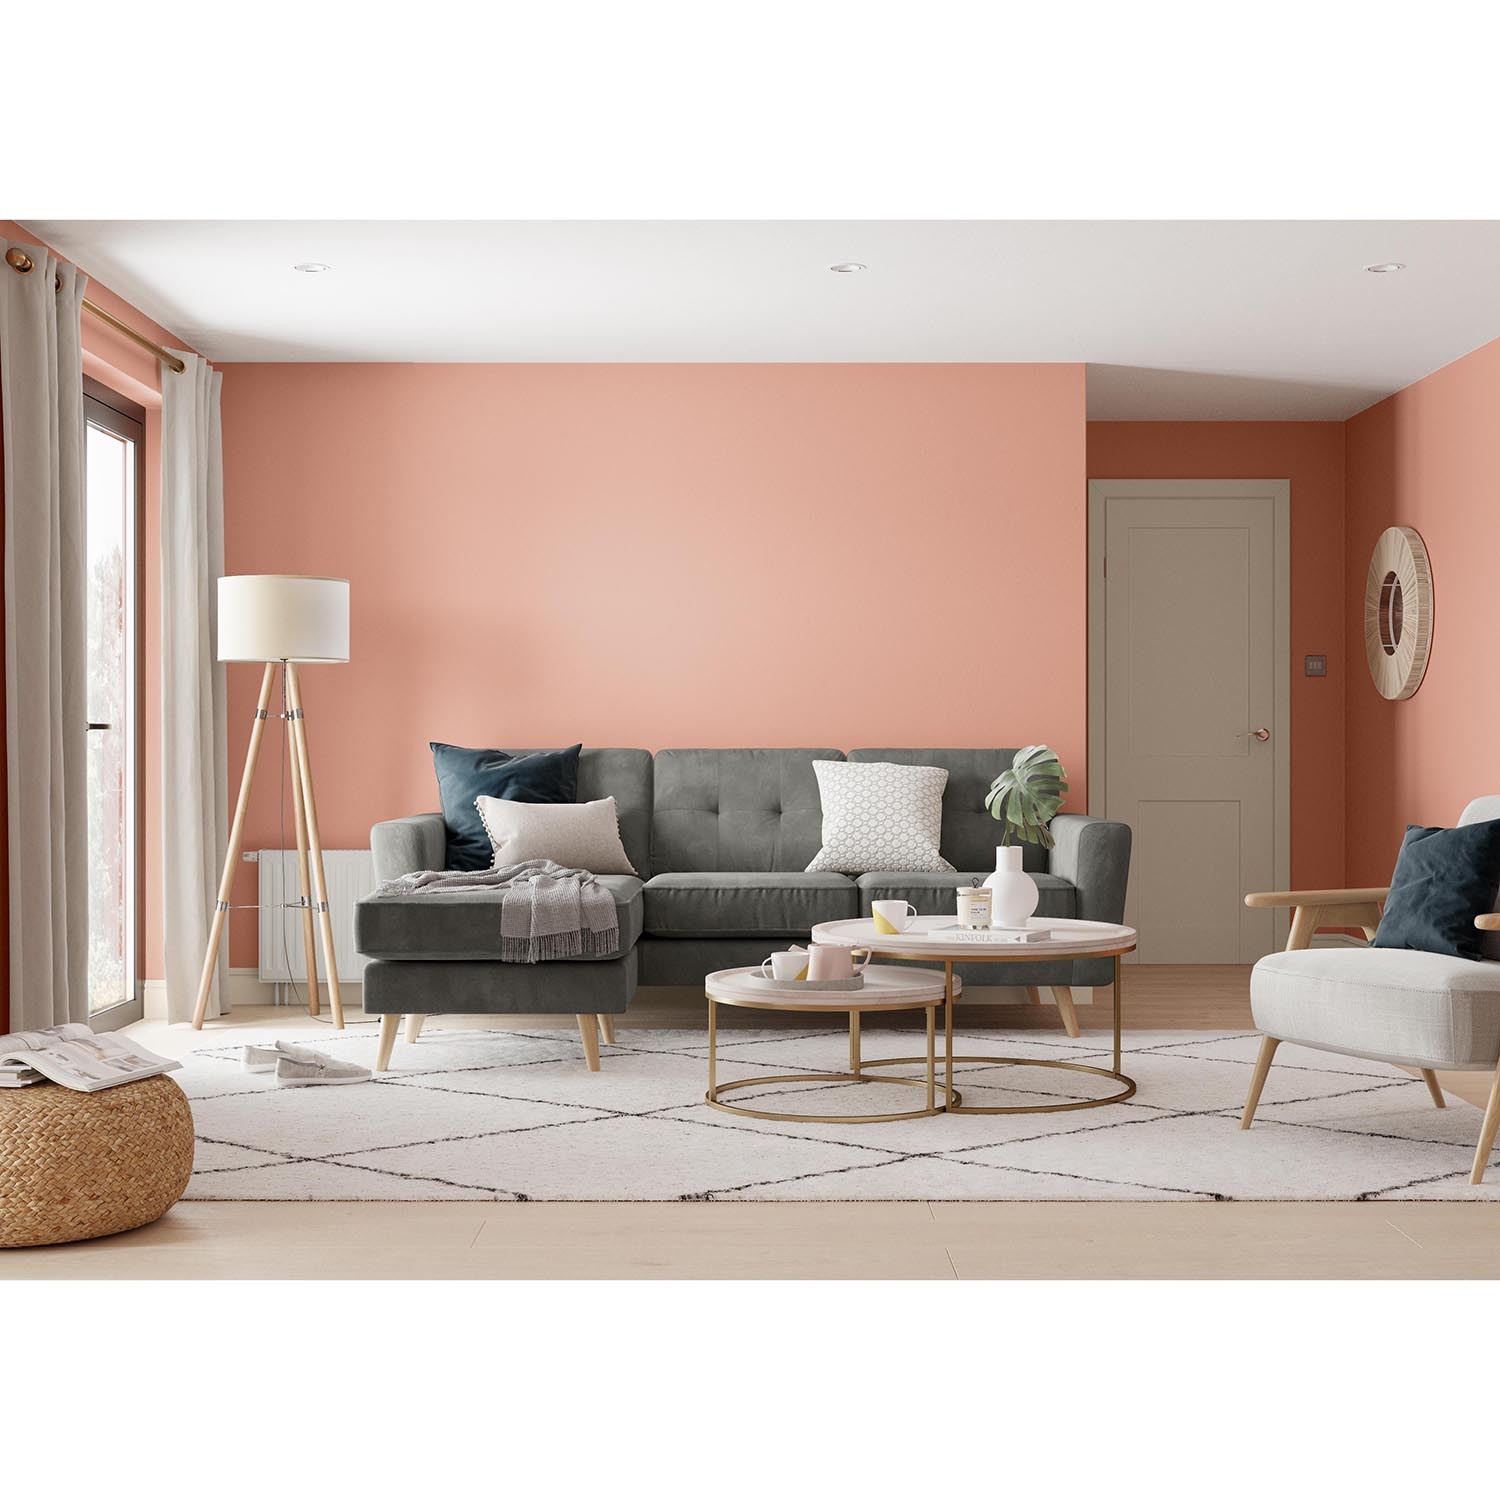 Dulux Walls & Ceilings Copper Blush Matt Emulsions Tester Paint Image 4